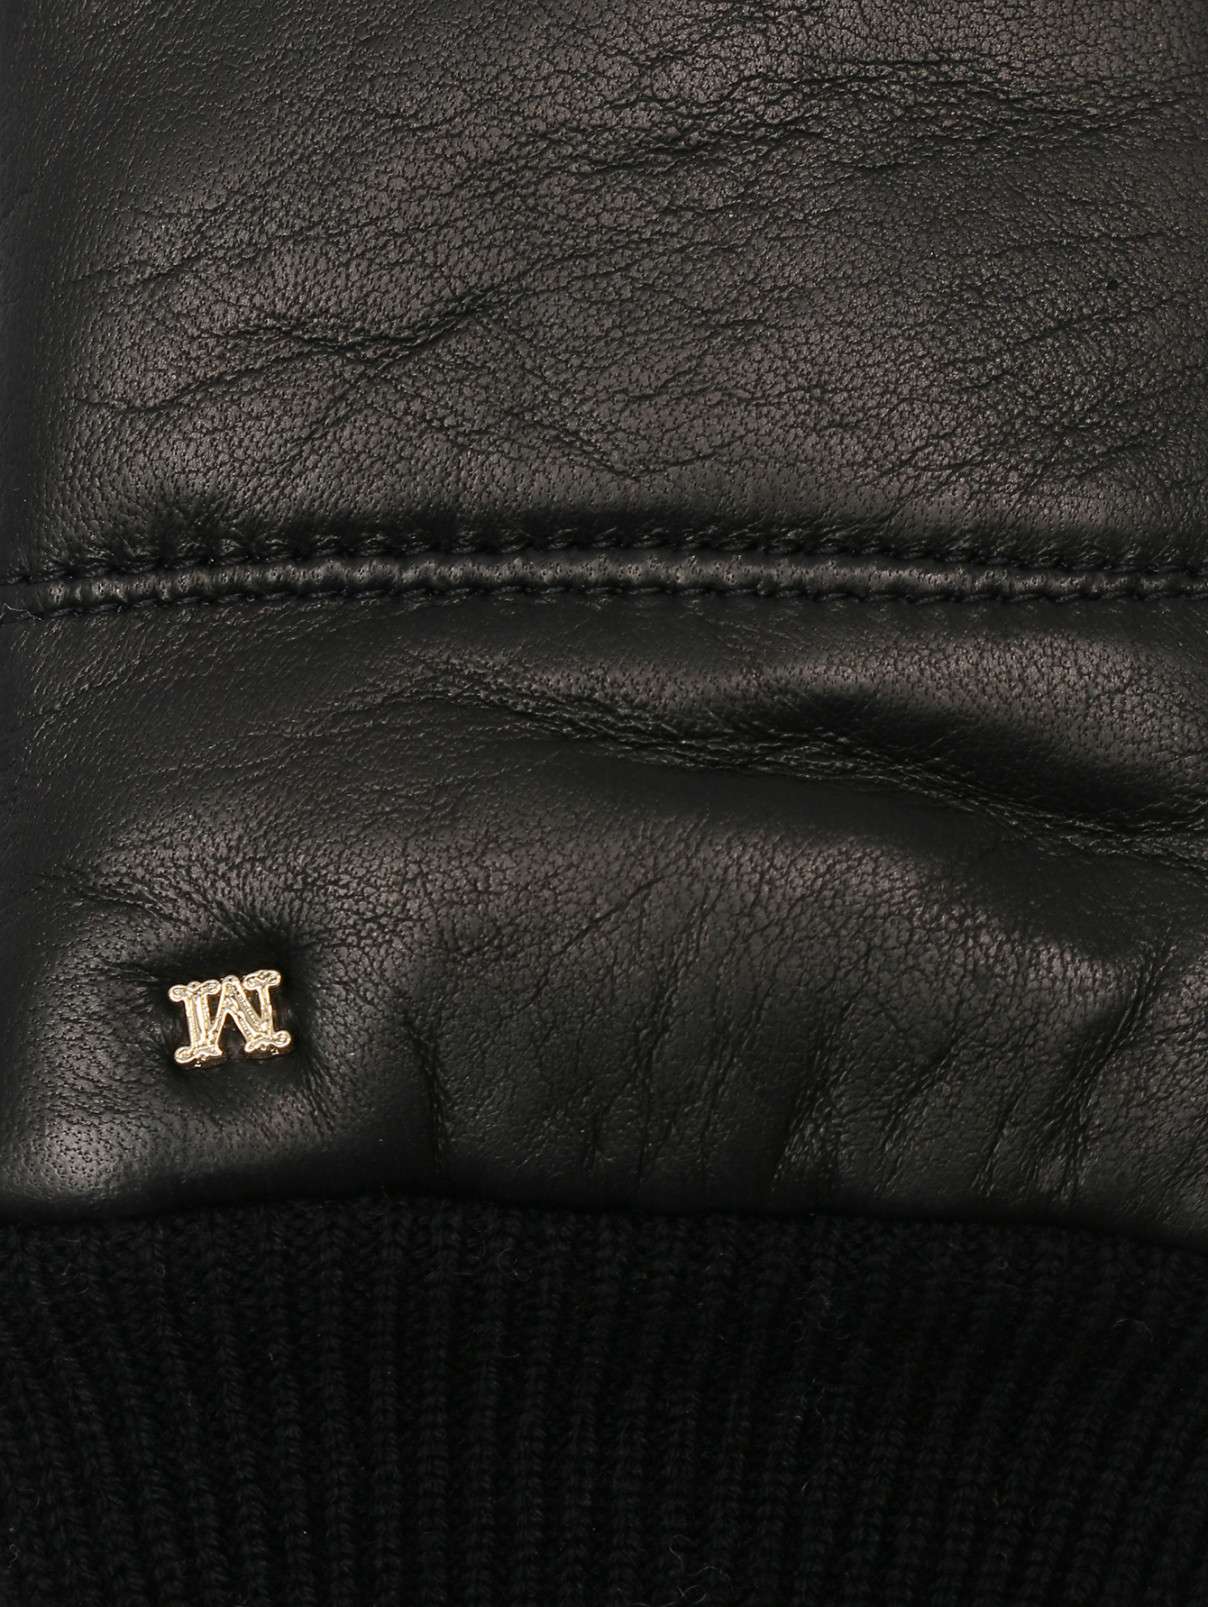 Варежки из кожи и шерсти с логотипом Max Mara  –  Деталь1  – Цвет:  Коричневый